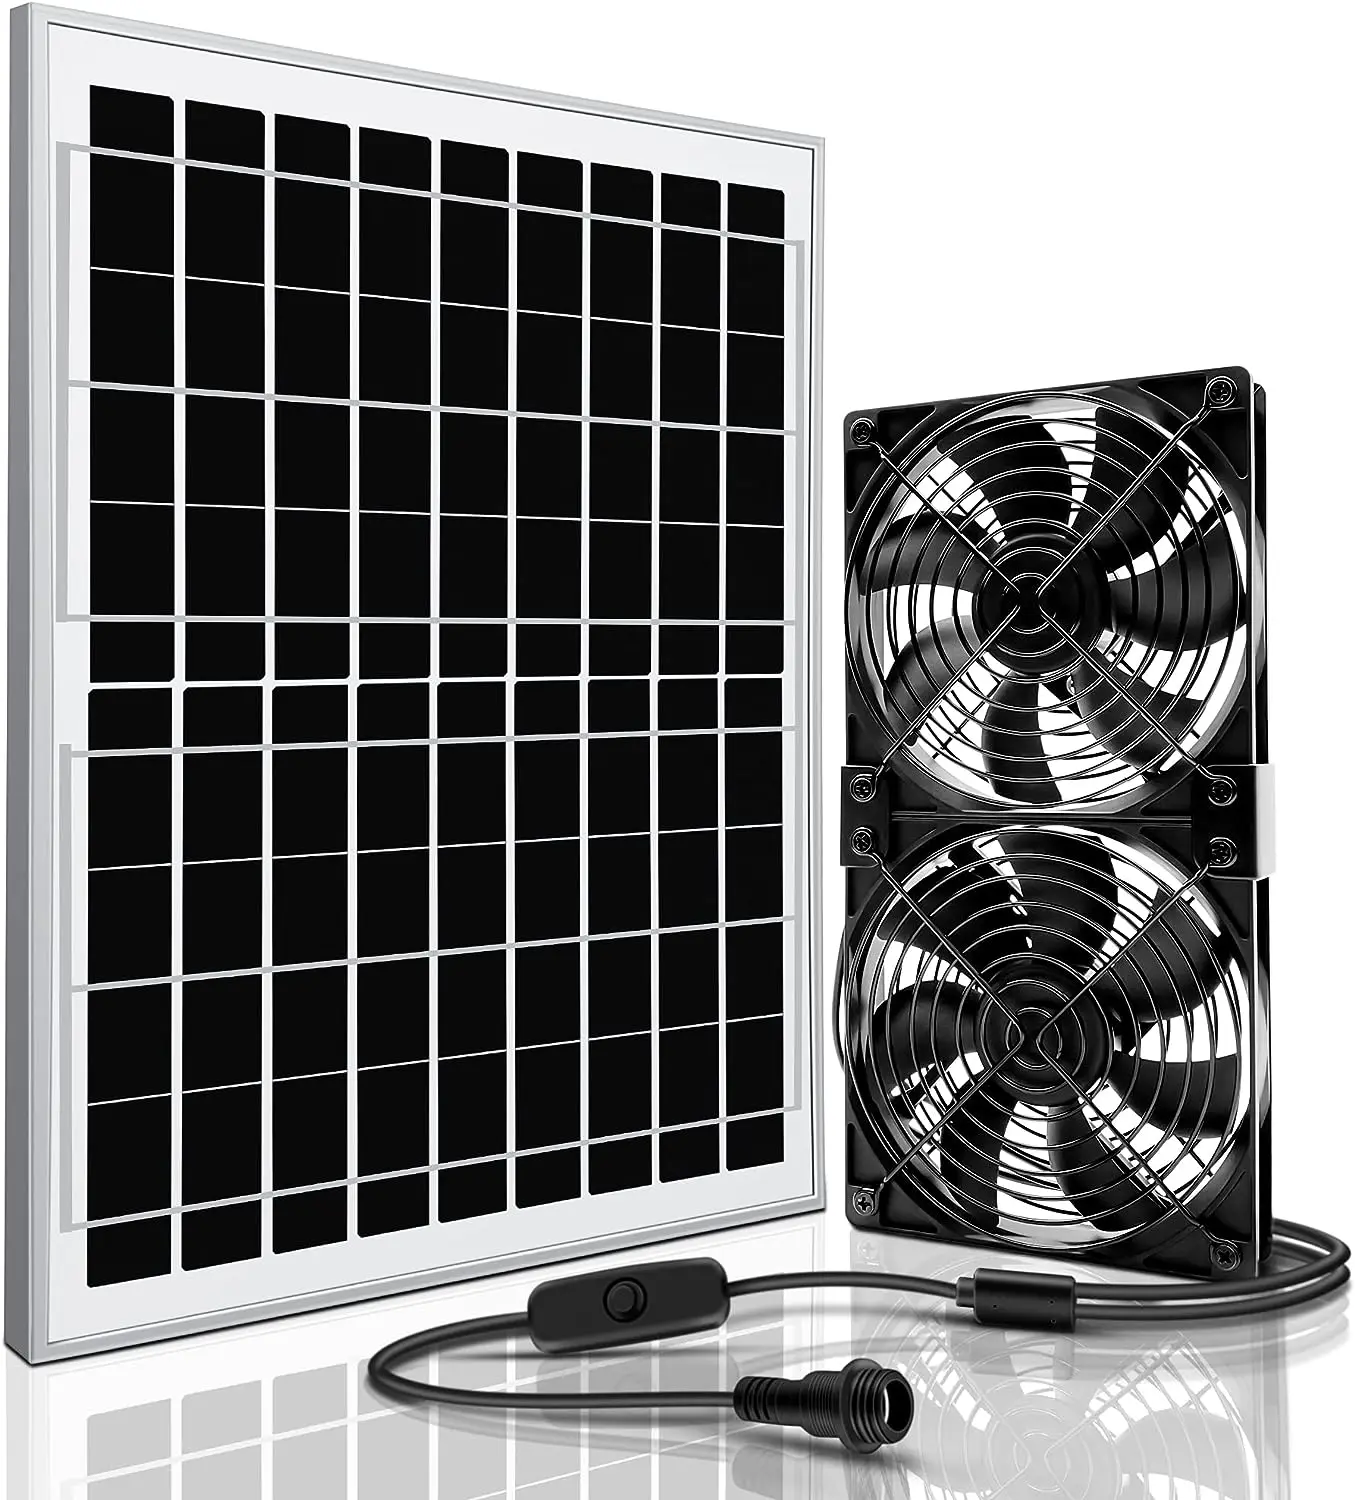 

Вентилятор с питанием, 15 Вт Солнечный вентилятор для наружной теплицы, курятника с проводом 13,78 футов и двойным бесщеточным вентилятором